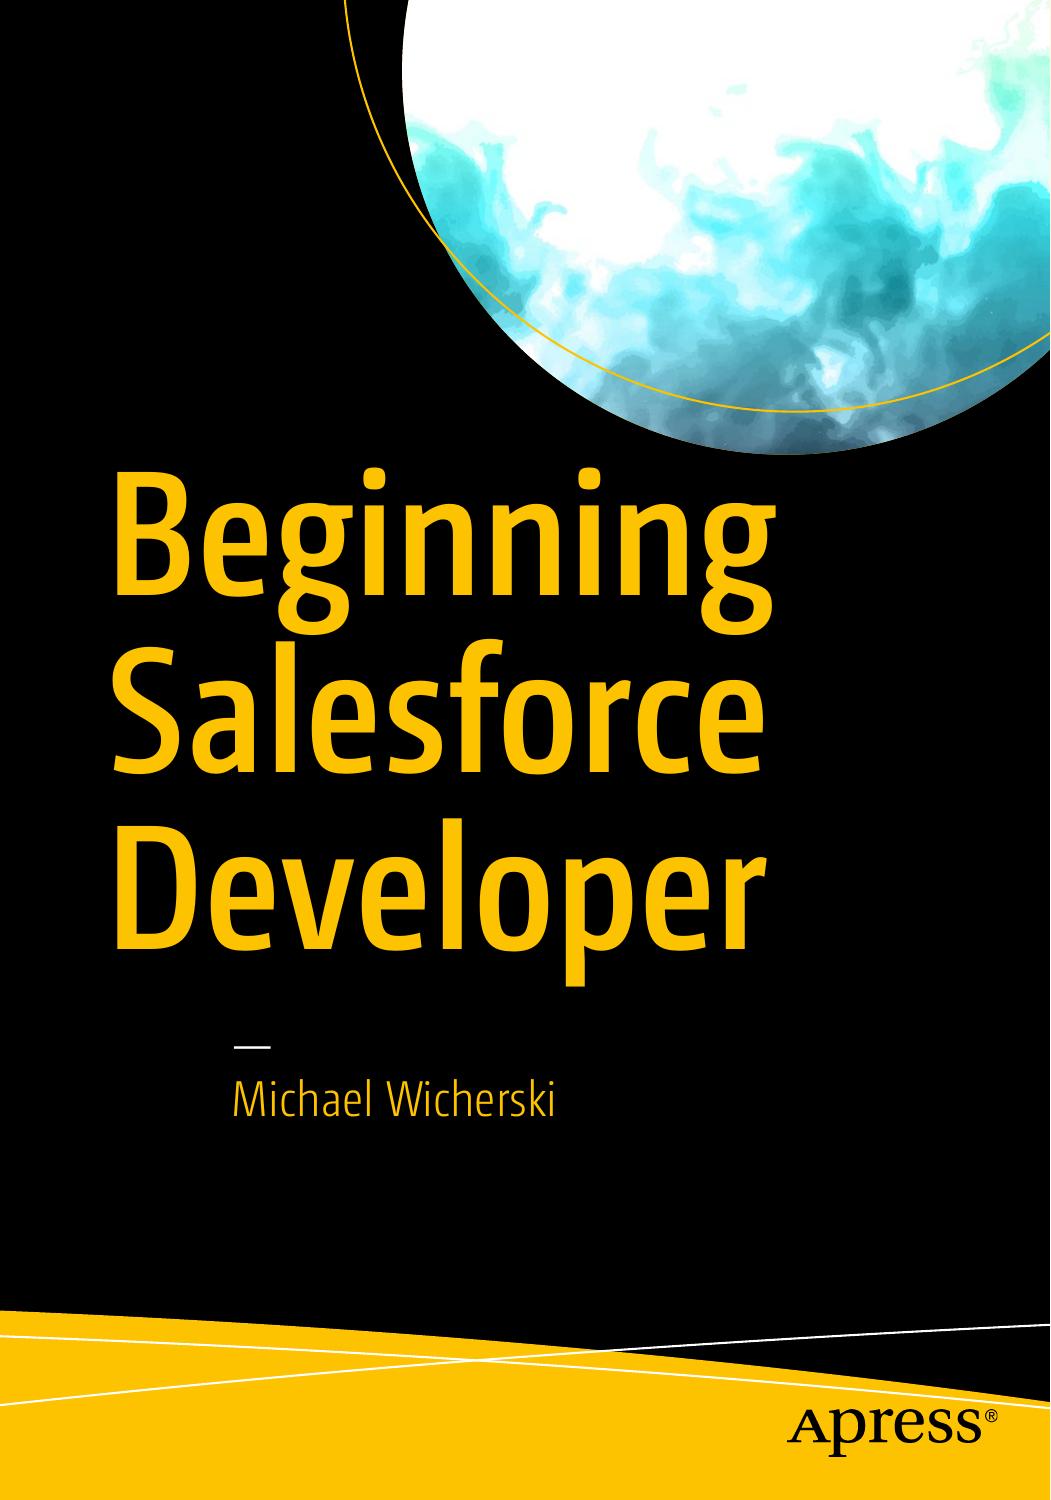 Beginning Salesforce Developer 2017 PDF